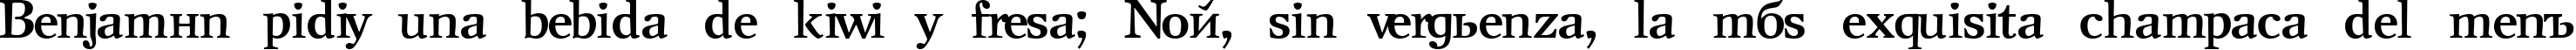 Пример написания шрифтом NewJournal Cyrillic Bold текста на испанском